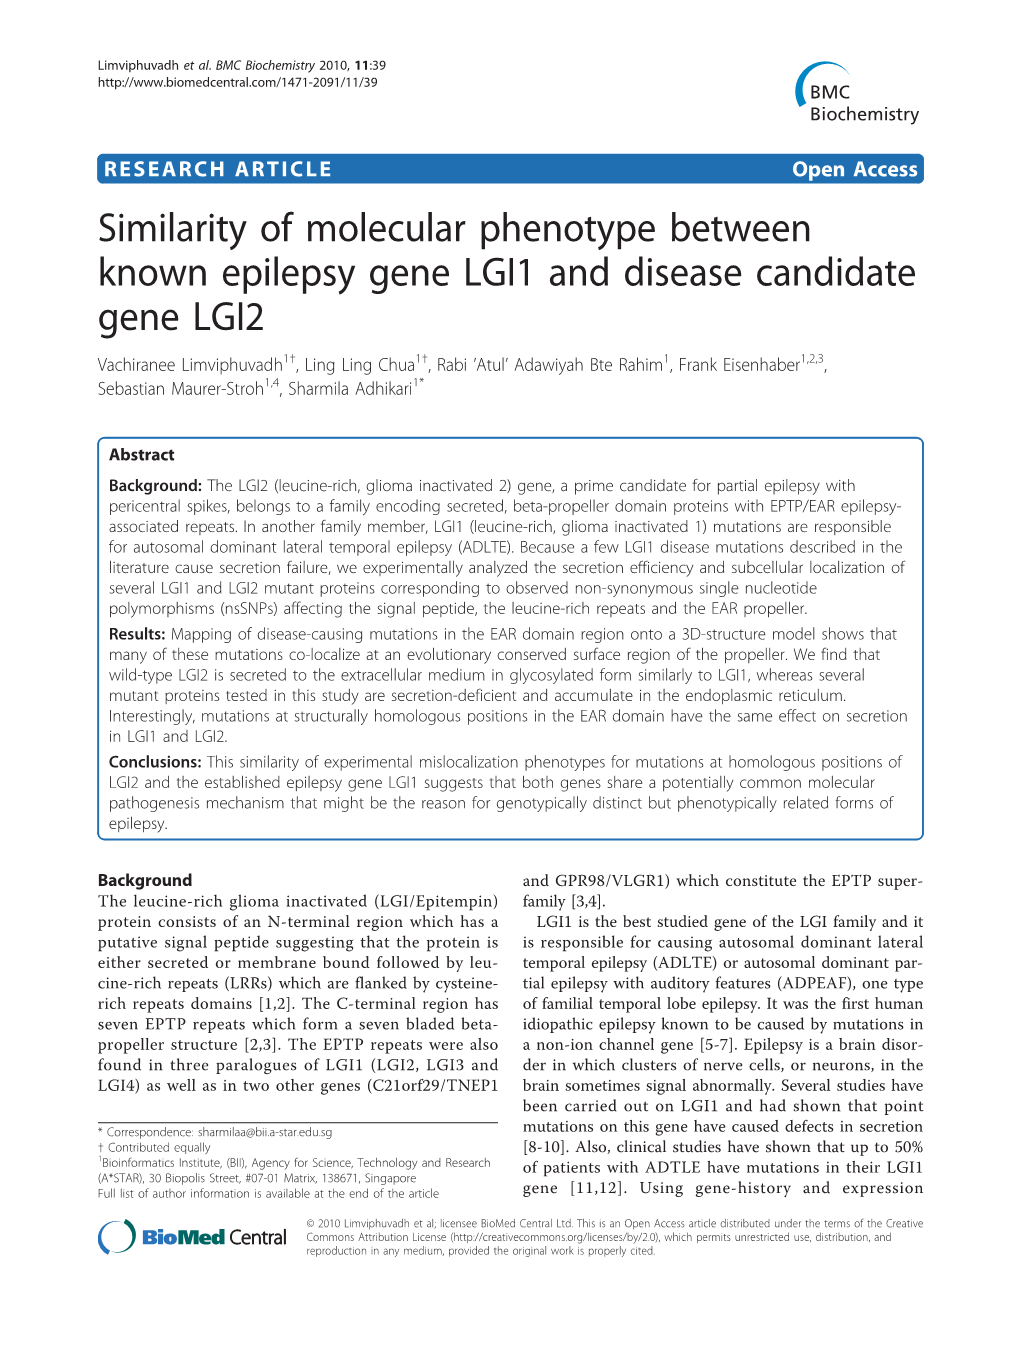 Similarity of Molecular Phenotype Between Known Epilepsy Gene LGI1 and Disease Candidate Gene LGI2